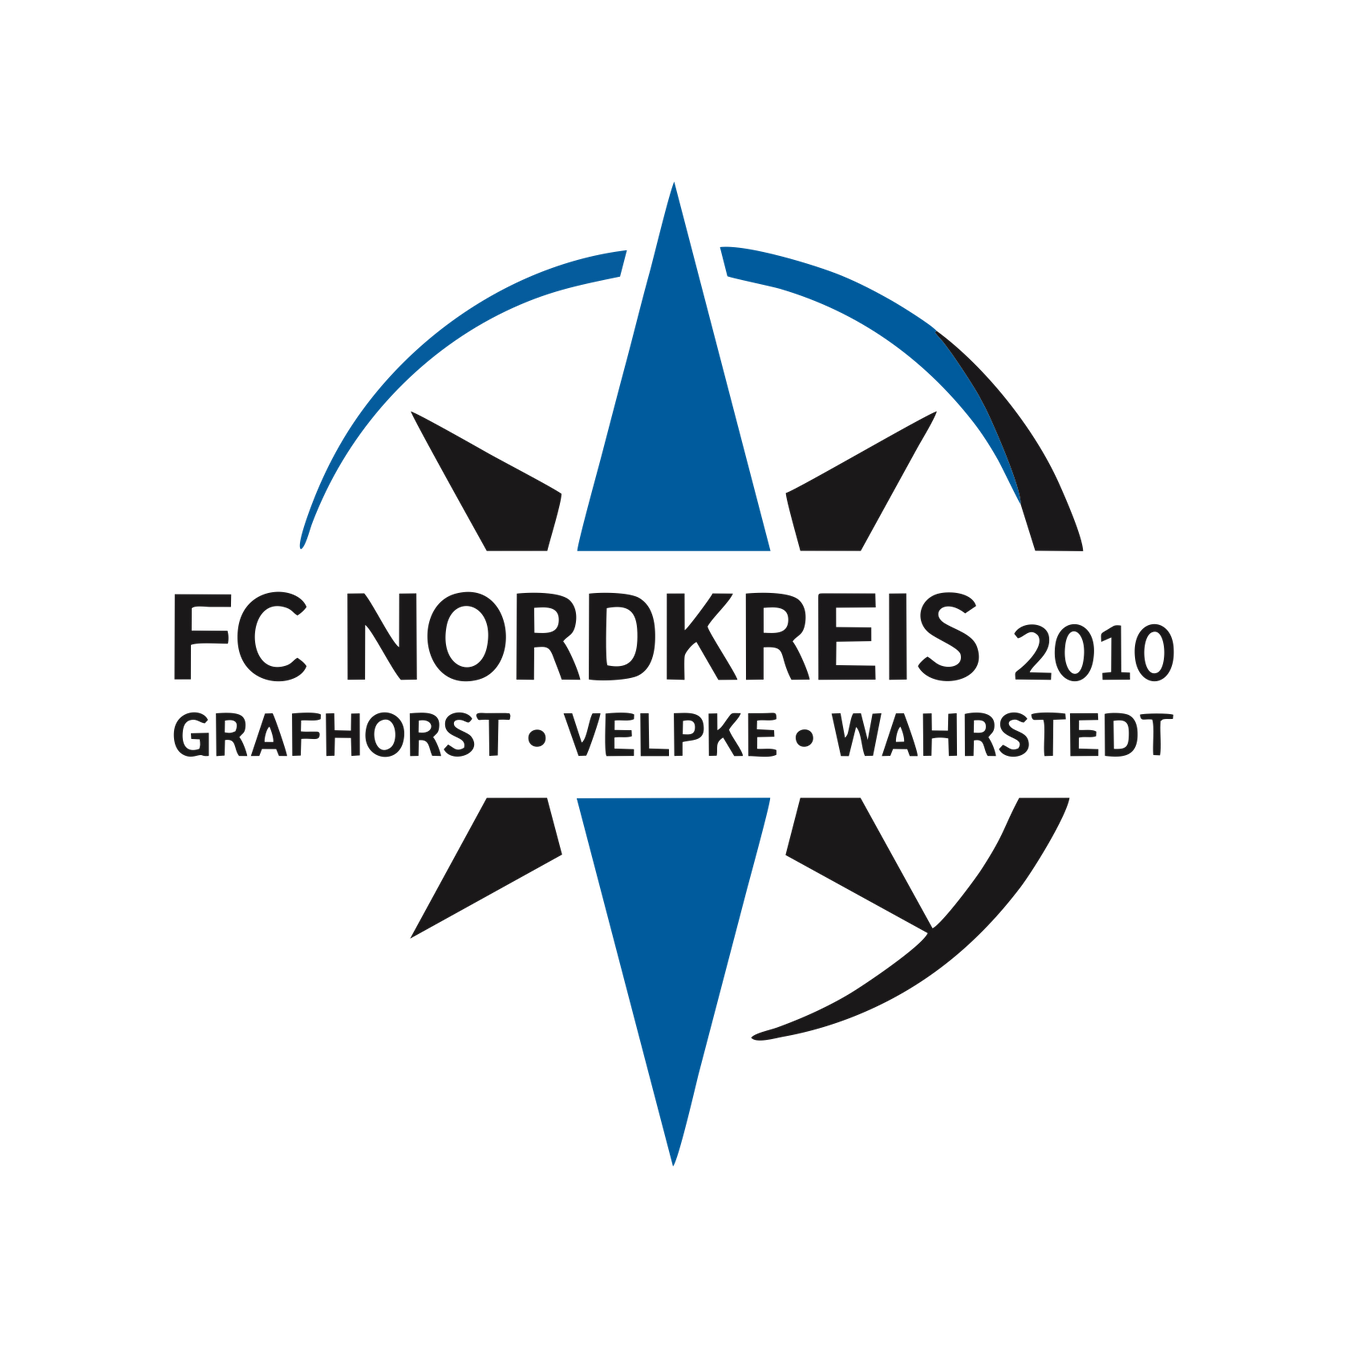 FC Nordkreis 2010 e.V.